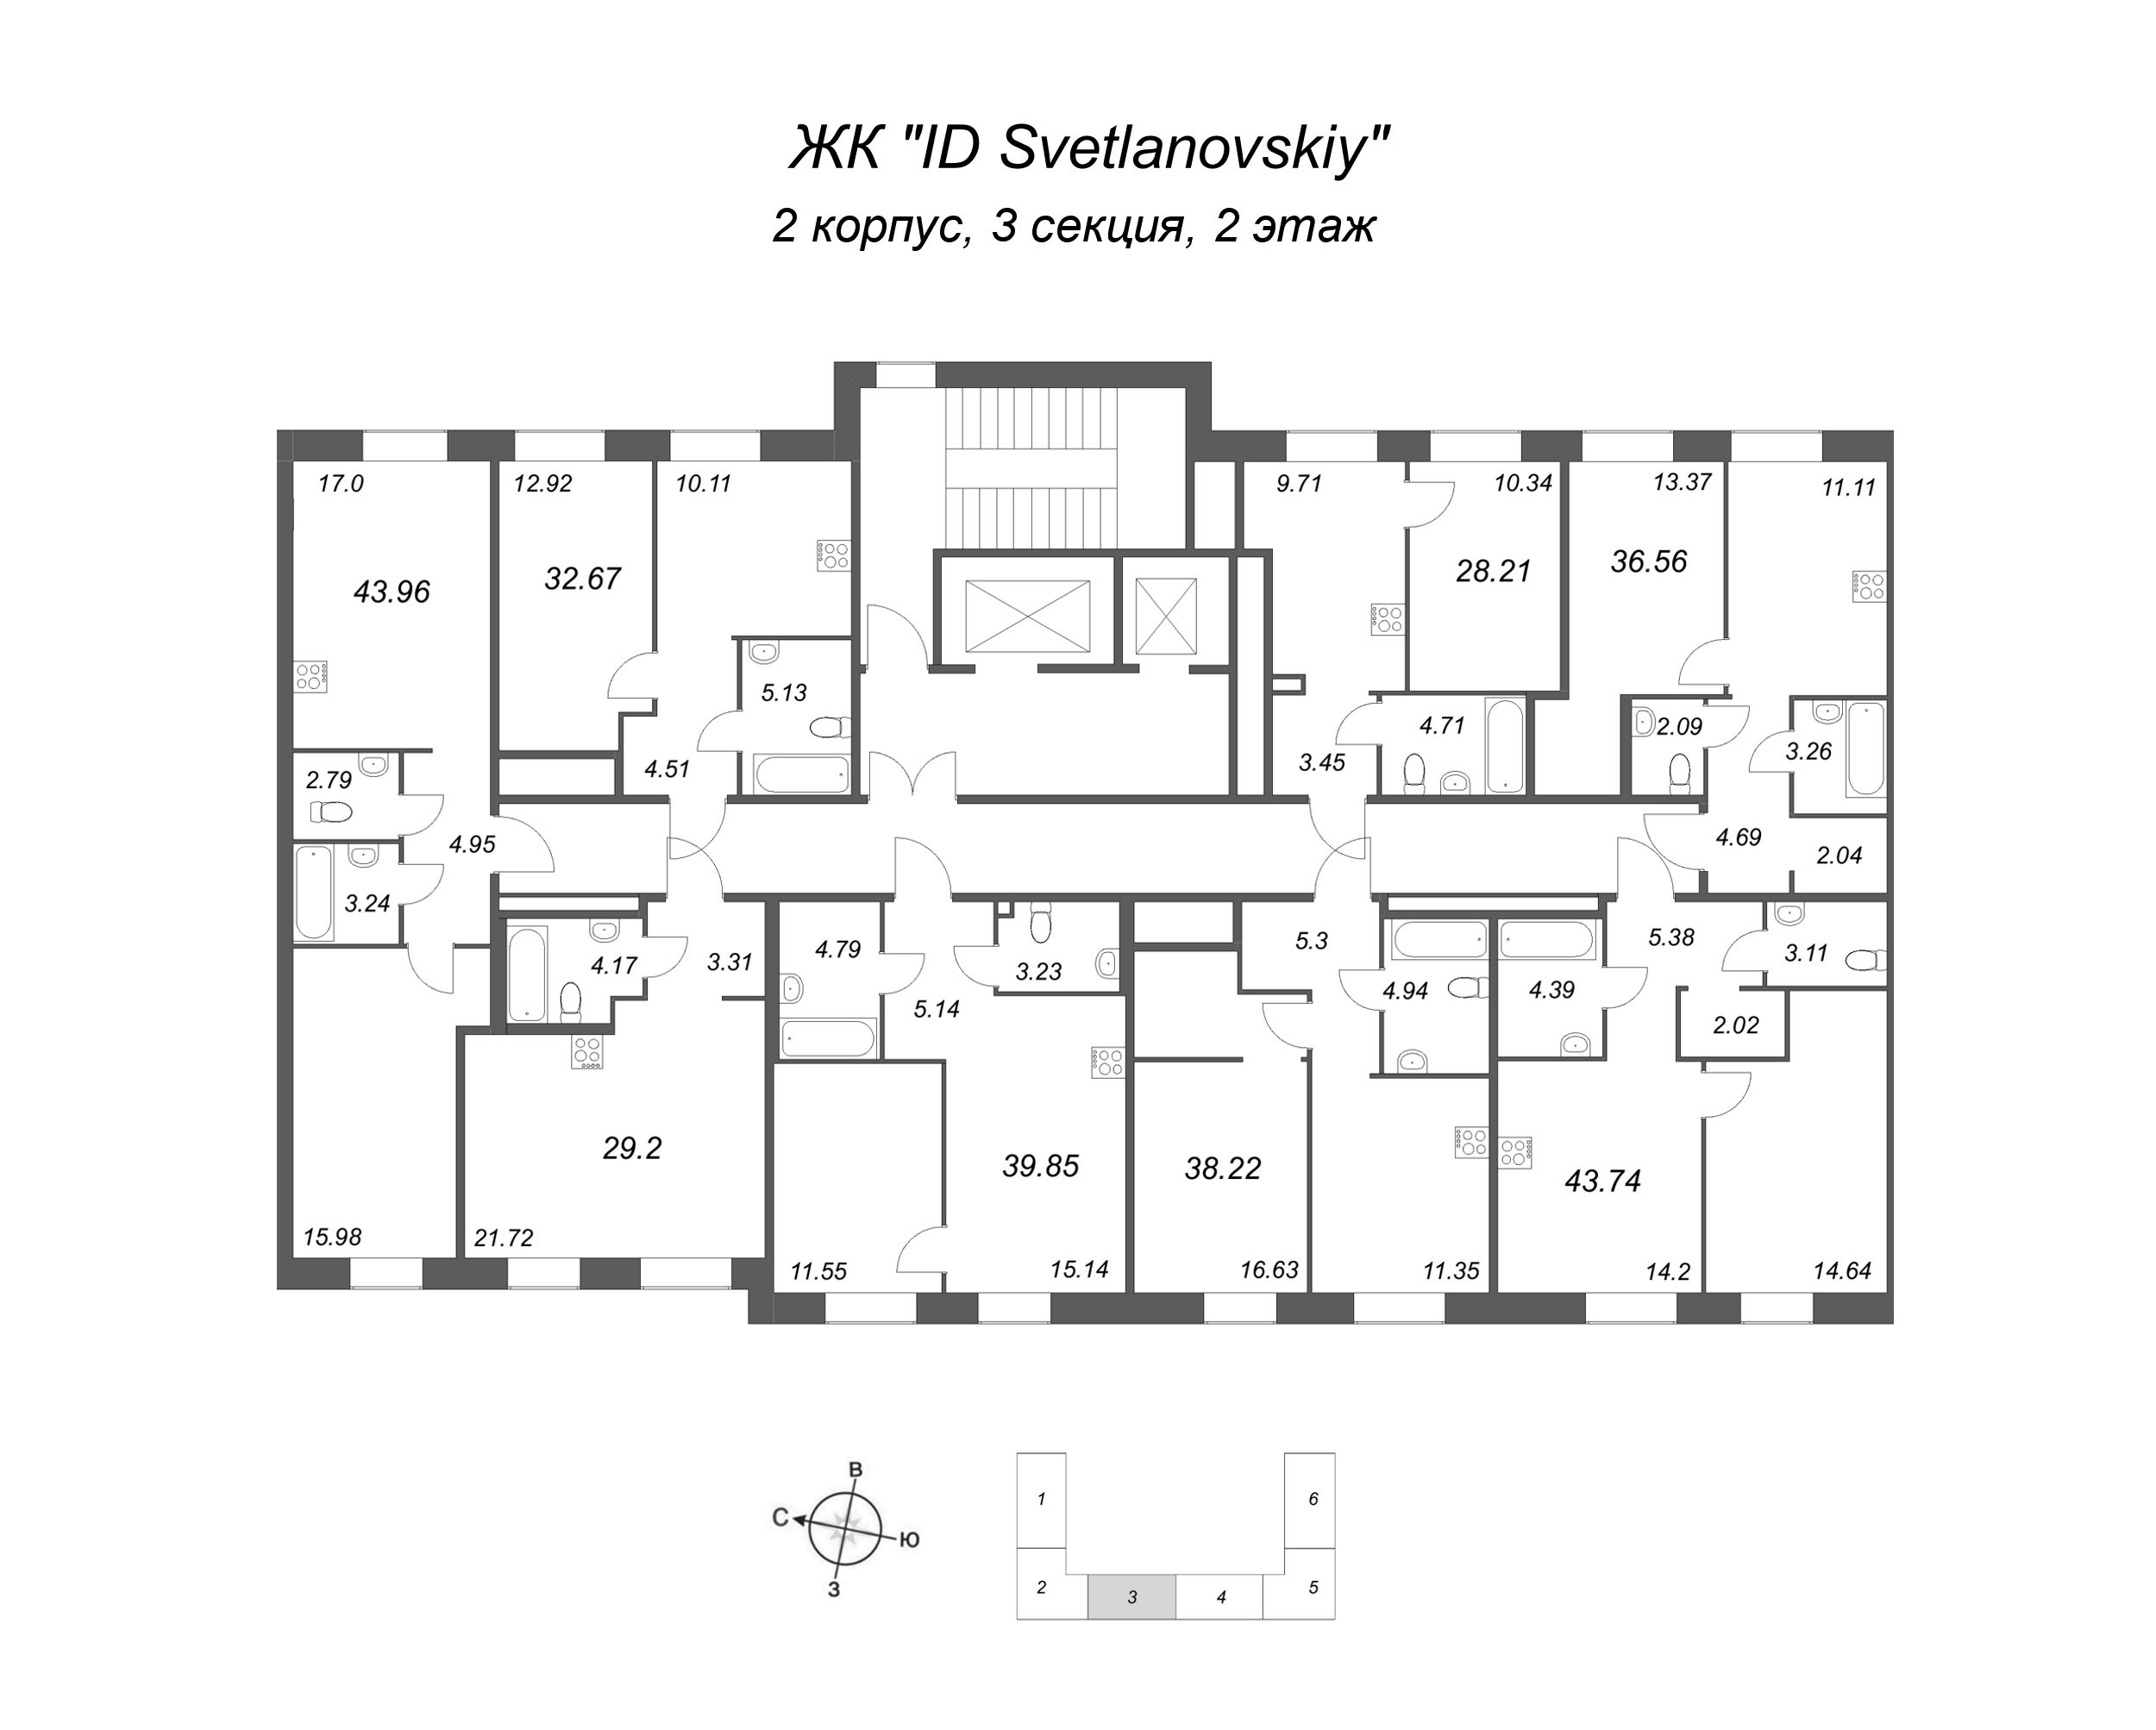 Квартира-студия, 29.2 м² в ЖК "ID Svetlanovskiy" - планировка этажа